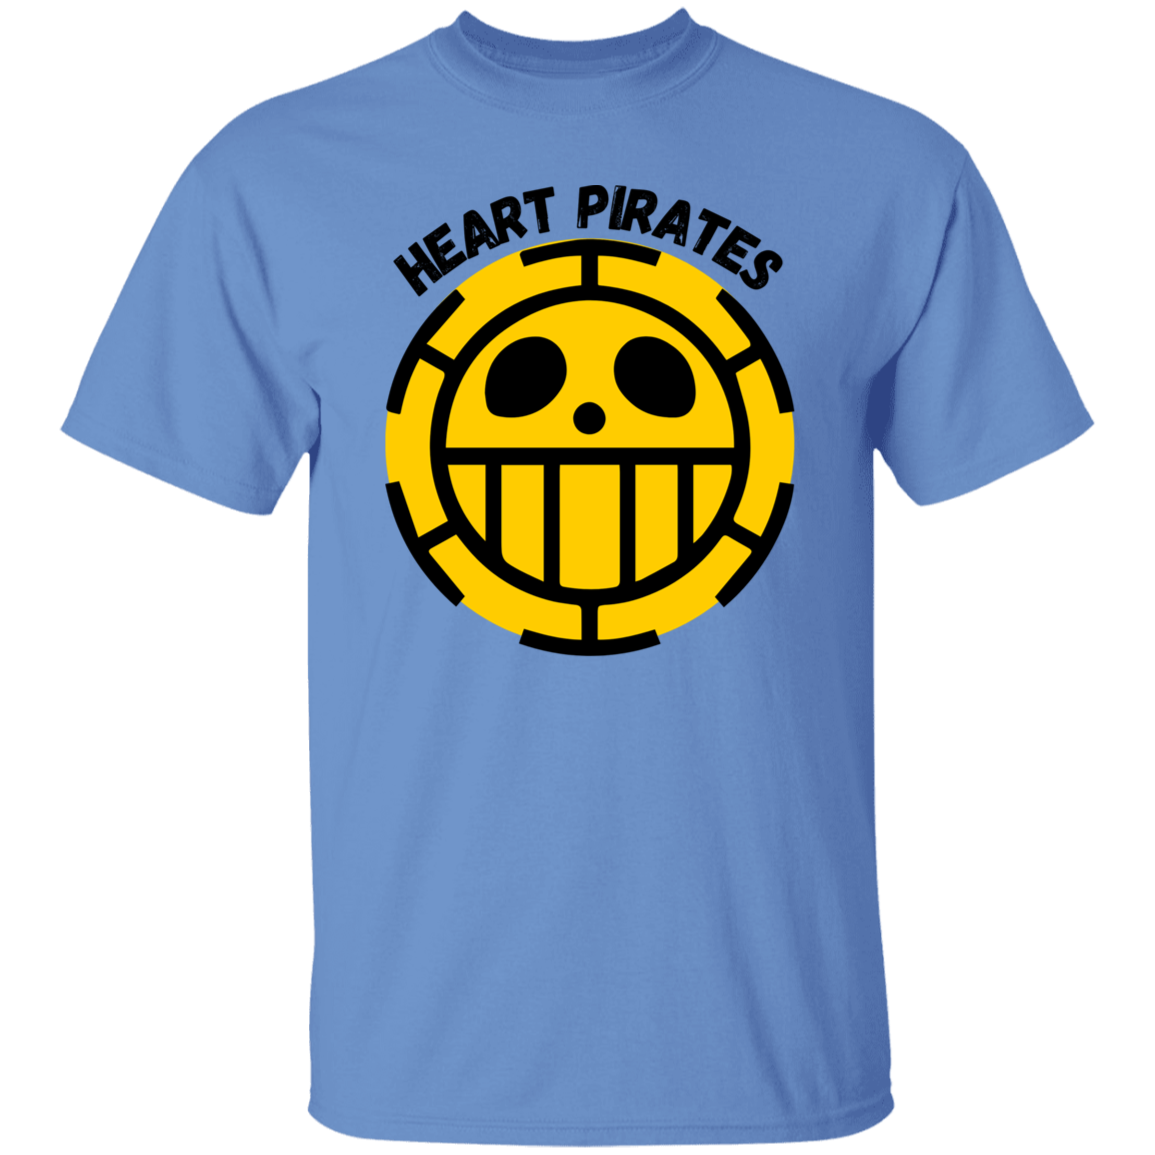 Heart Pirates - Men's T-Shirt